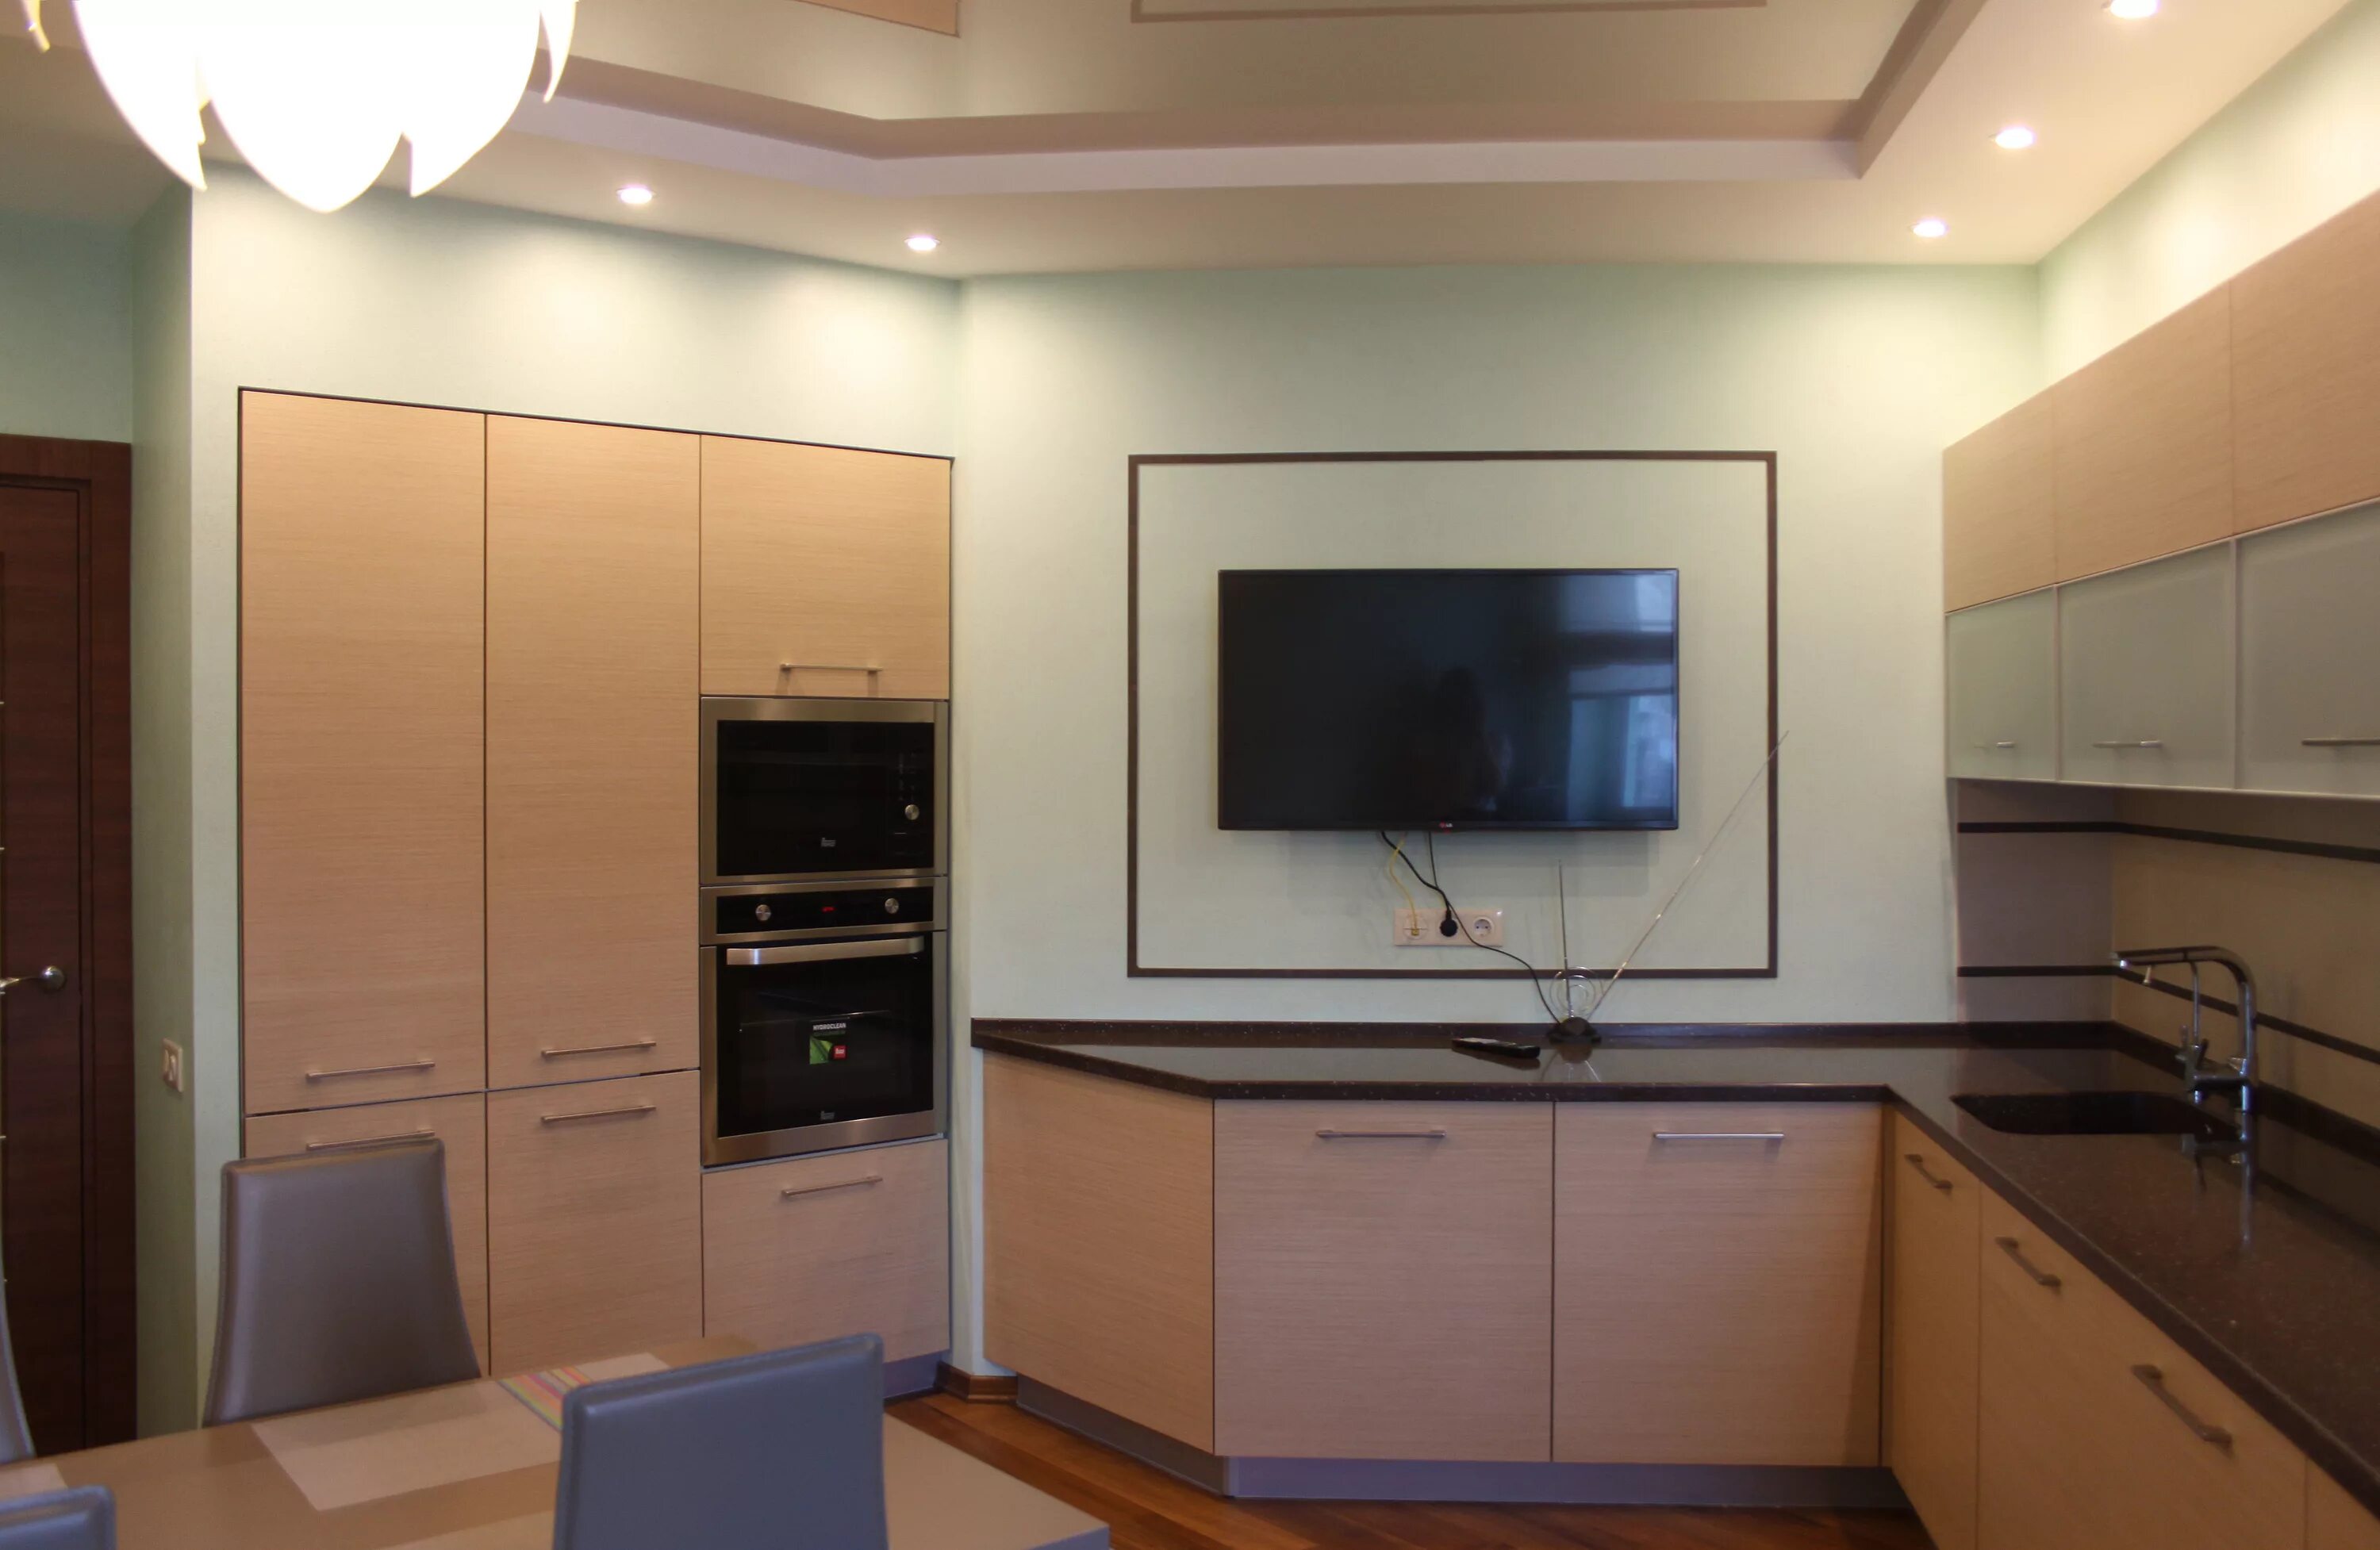 Кухня со встроенным телевизором. Телевизор на кухне. Большой телевизор на кухне. Кухонный гарнитур с телевизором.